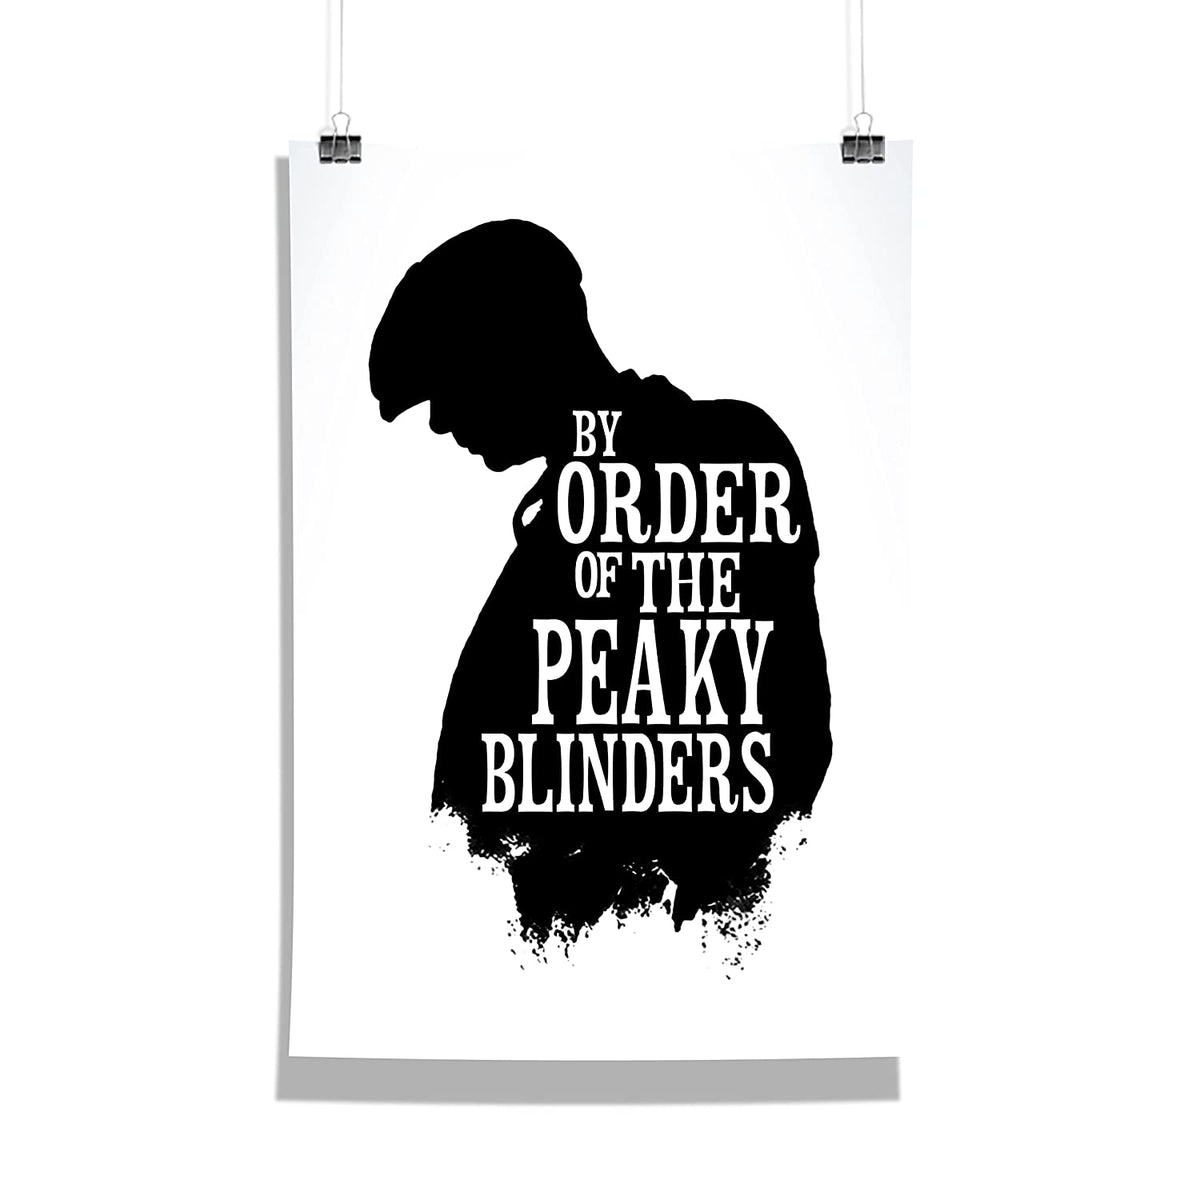 By Order of the Peaky Blinders